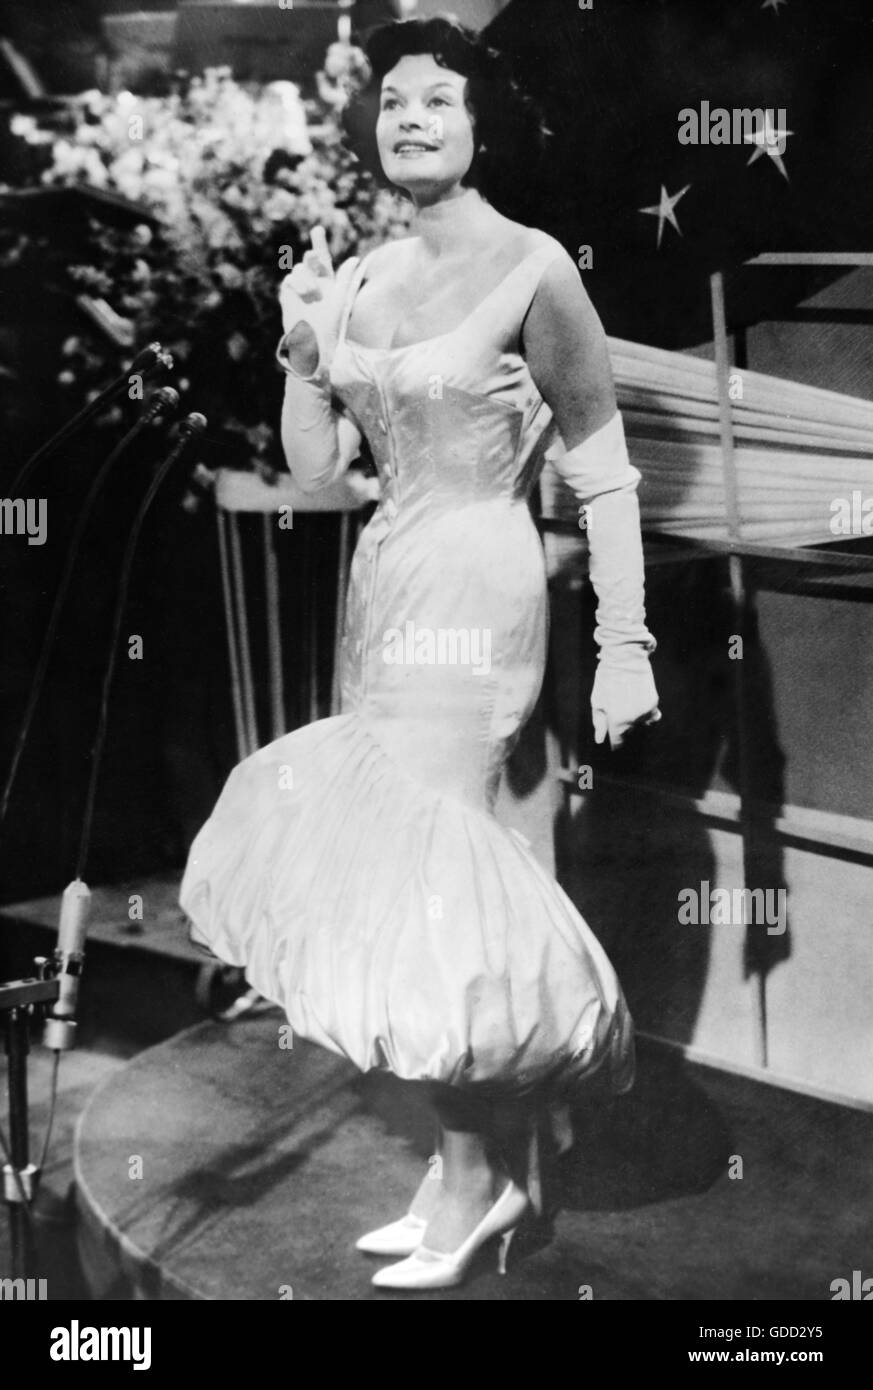 Hielscher, Margot, * 29.9.1919, deutsche Schauspielerin, volle Länge, bei Bühnenauftritt, Grand Prix Eurovision de la Chanson Europeenne, Hilversum, 14.3.1958, Stockfoto